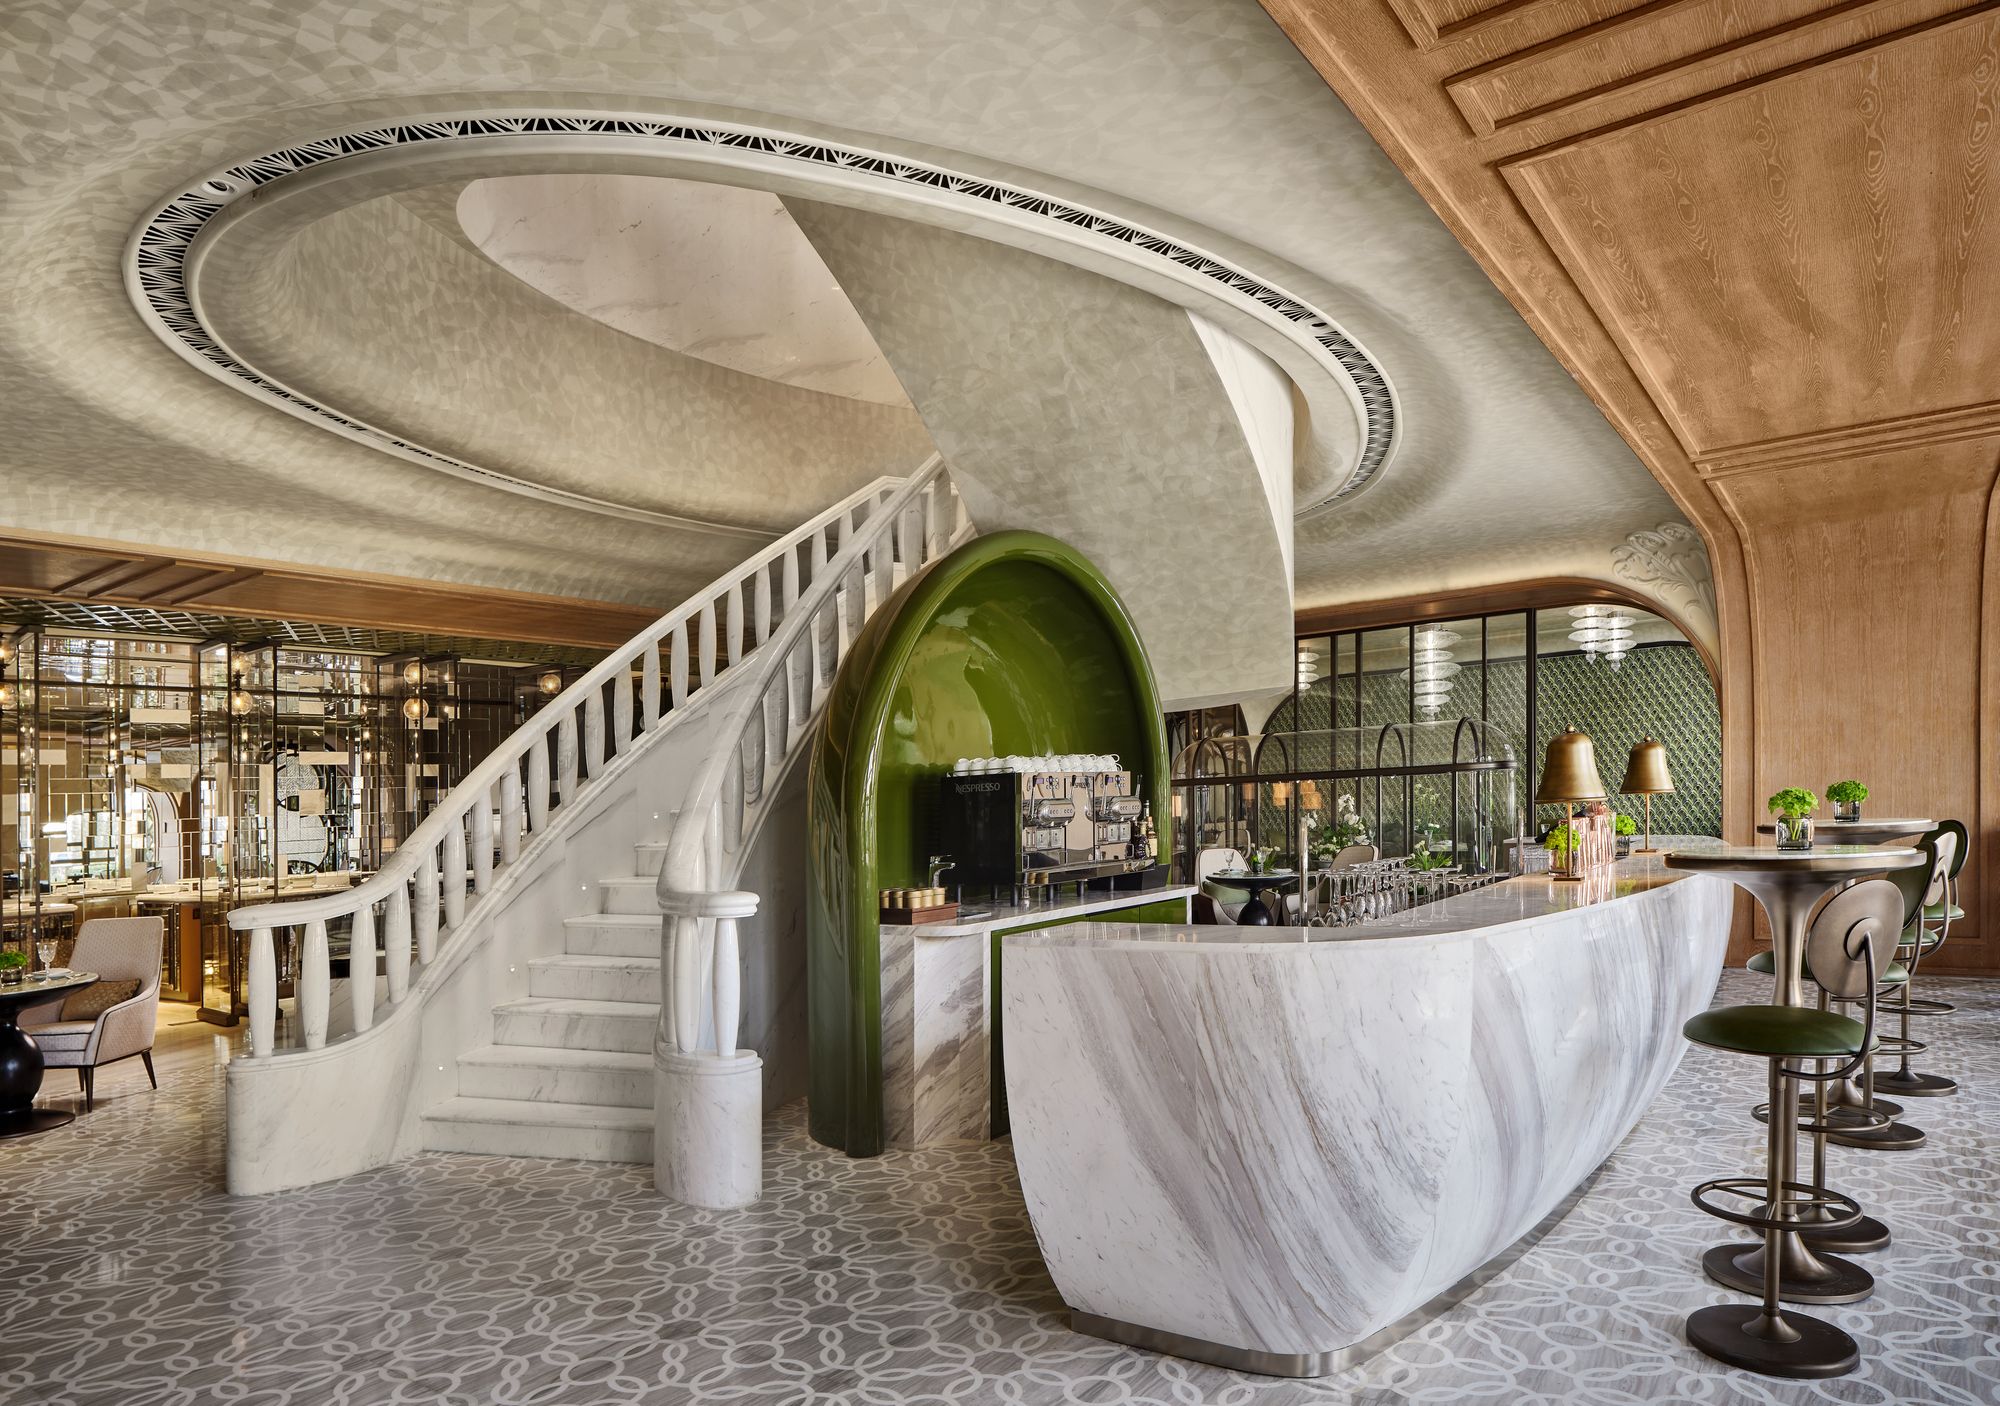 孔雀巷餐厅|ART-Arrakis | 建筑室内设计的创新与灵感